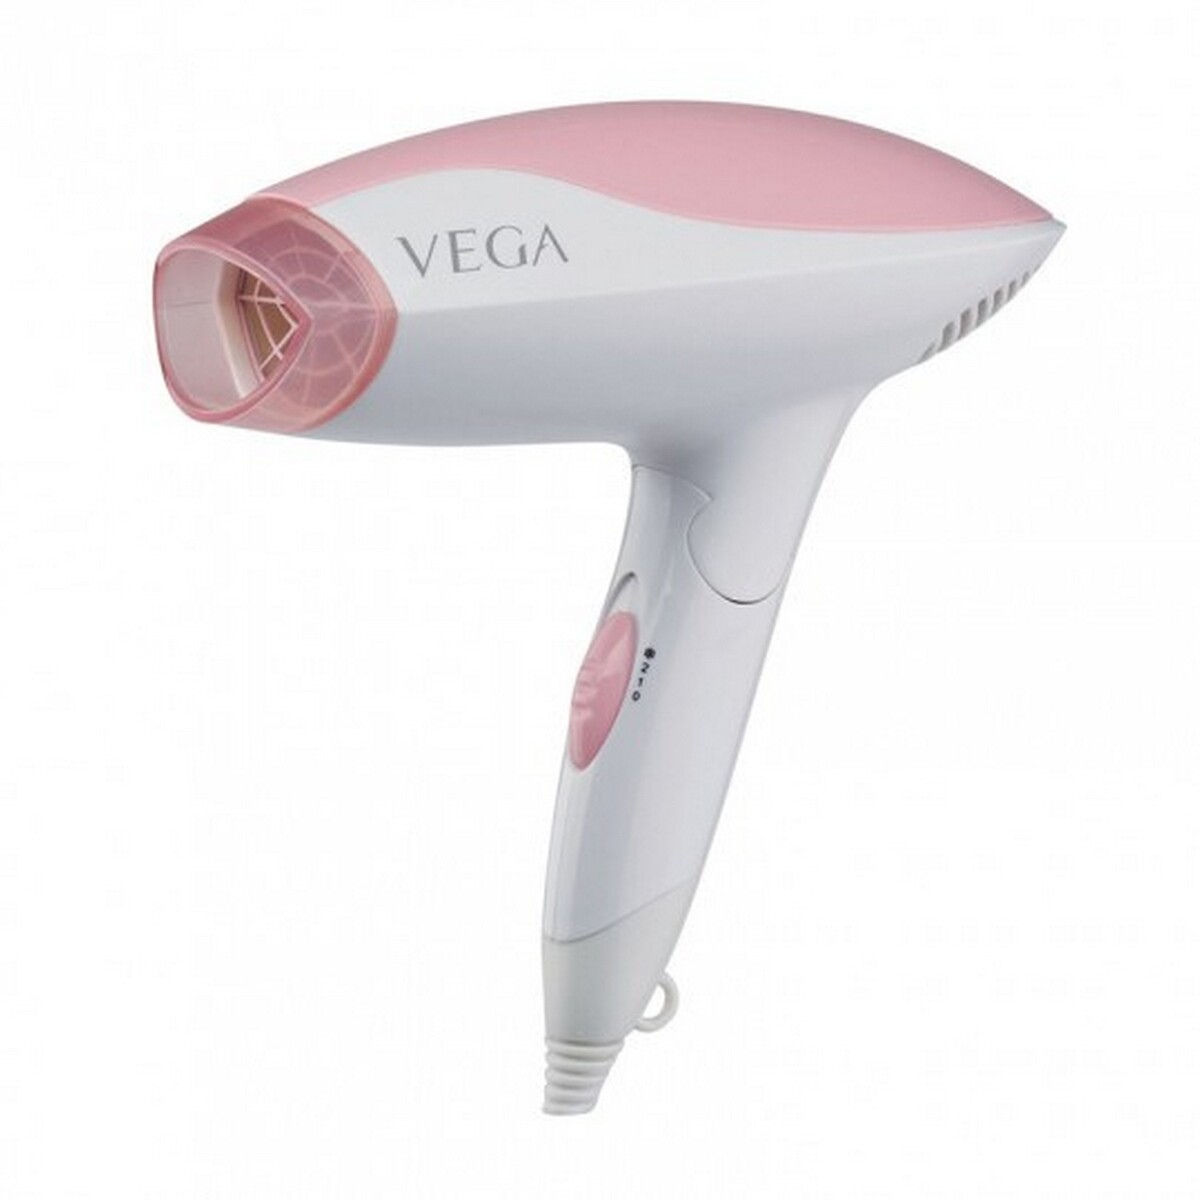 Vega Hair Dryer VHDH 15